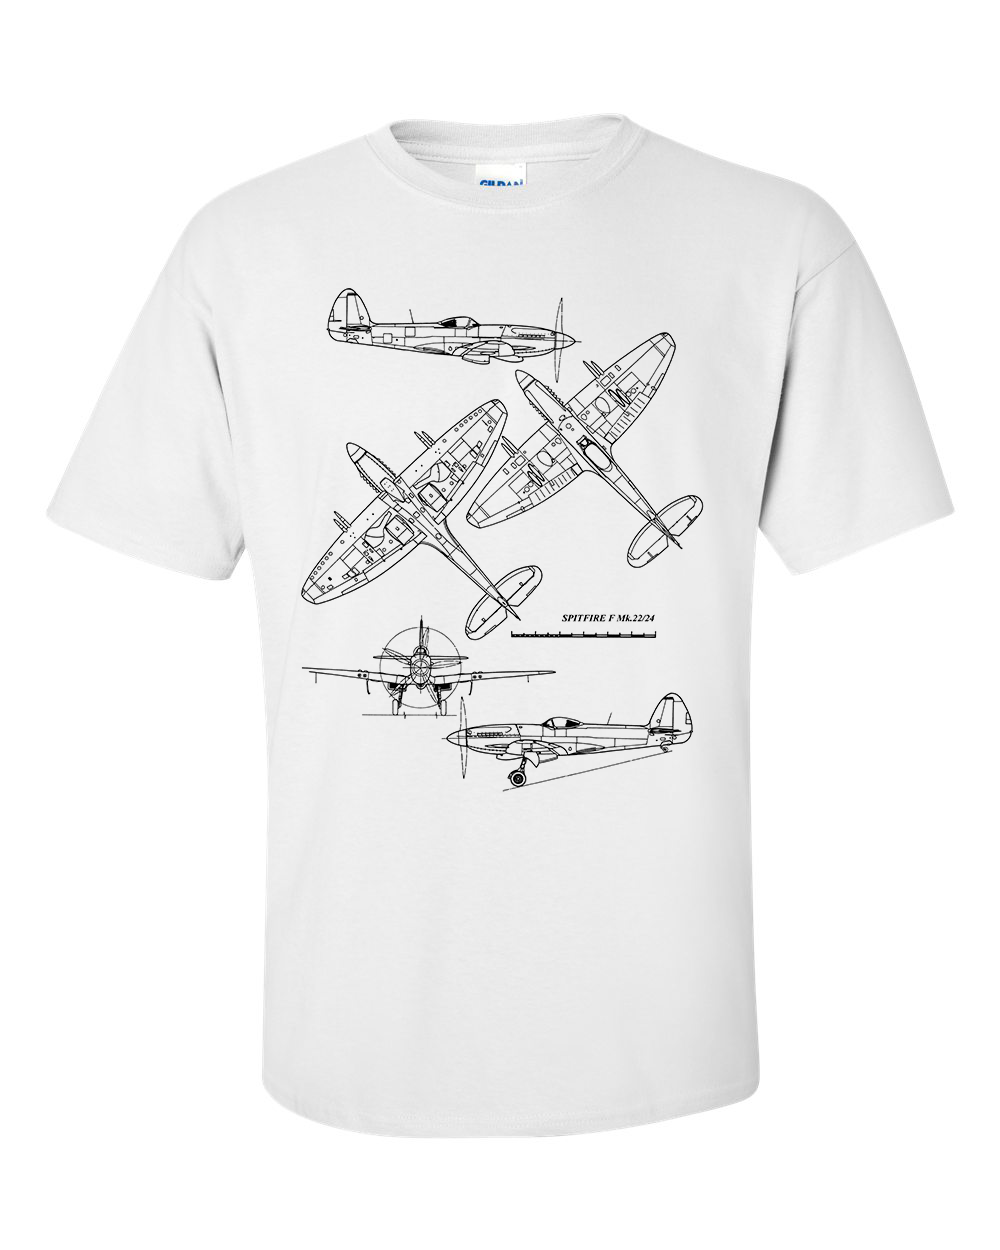 Spitfire T-Shirt Fighter Aircraft Technical Drawing Blueprint Shirt